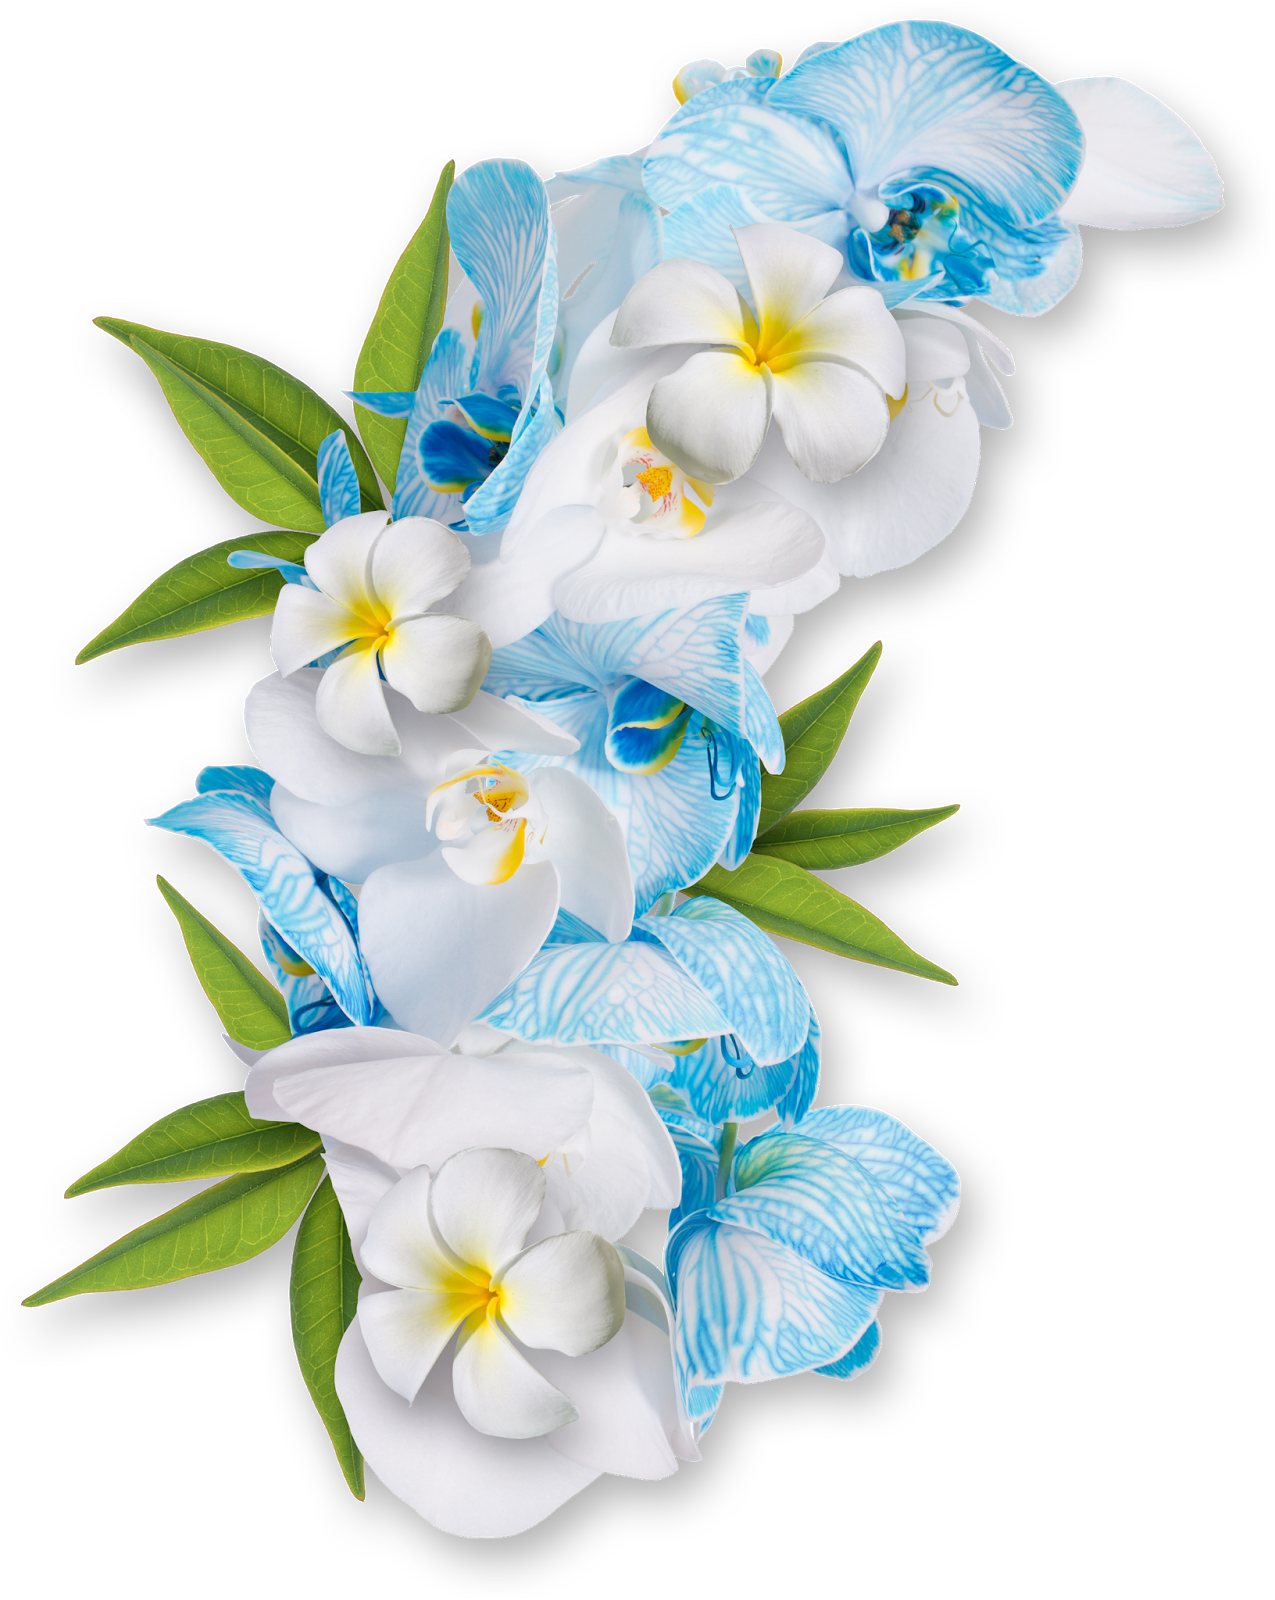 Flores PNG - + de 500 imagens de flores PNG com fundo transparente!